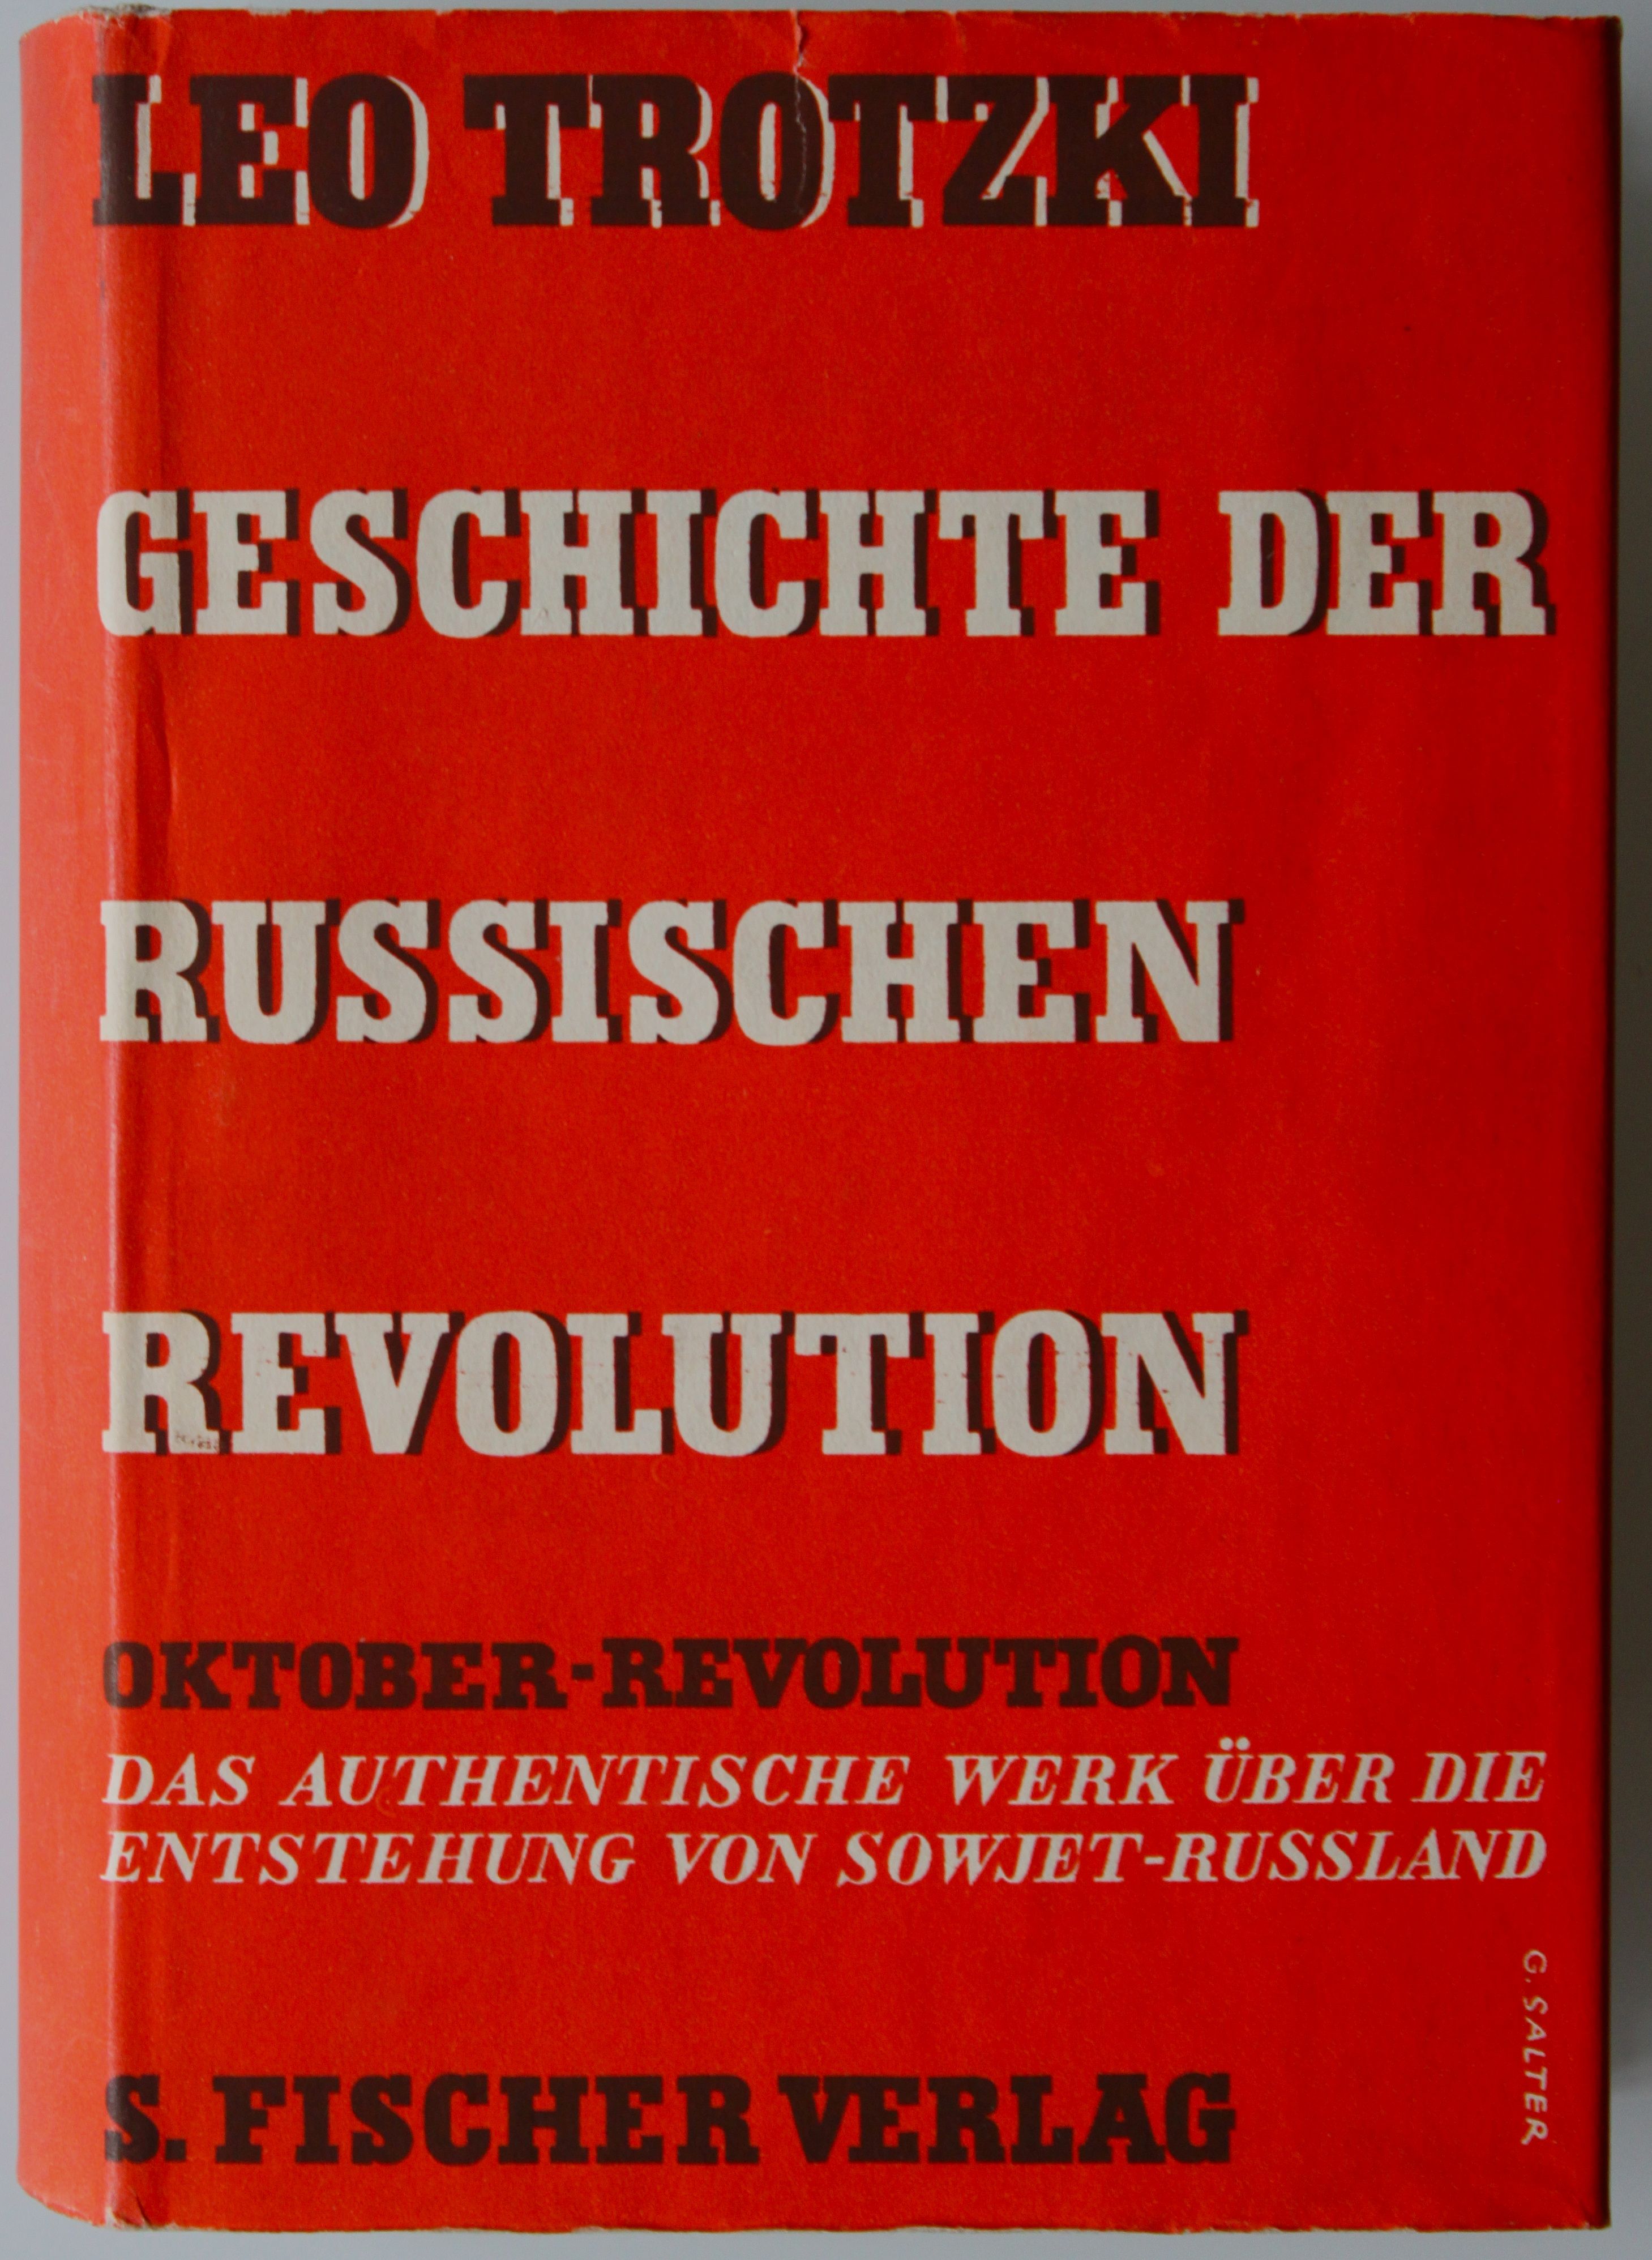 Trotzki, Geschichte der Russischen Revolution II, 1933